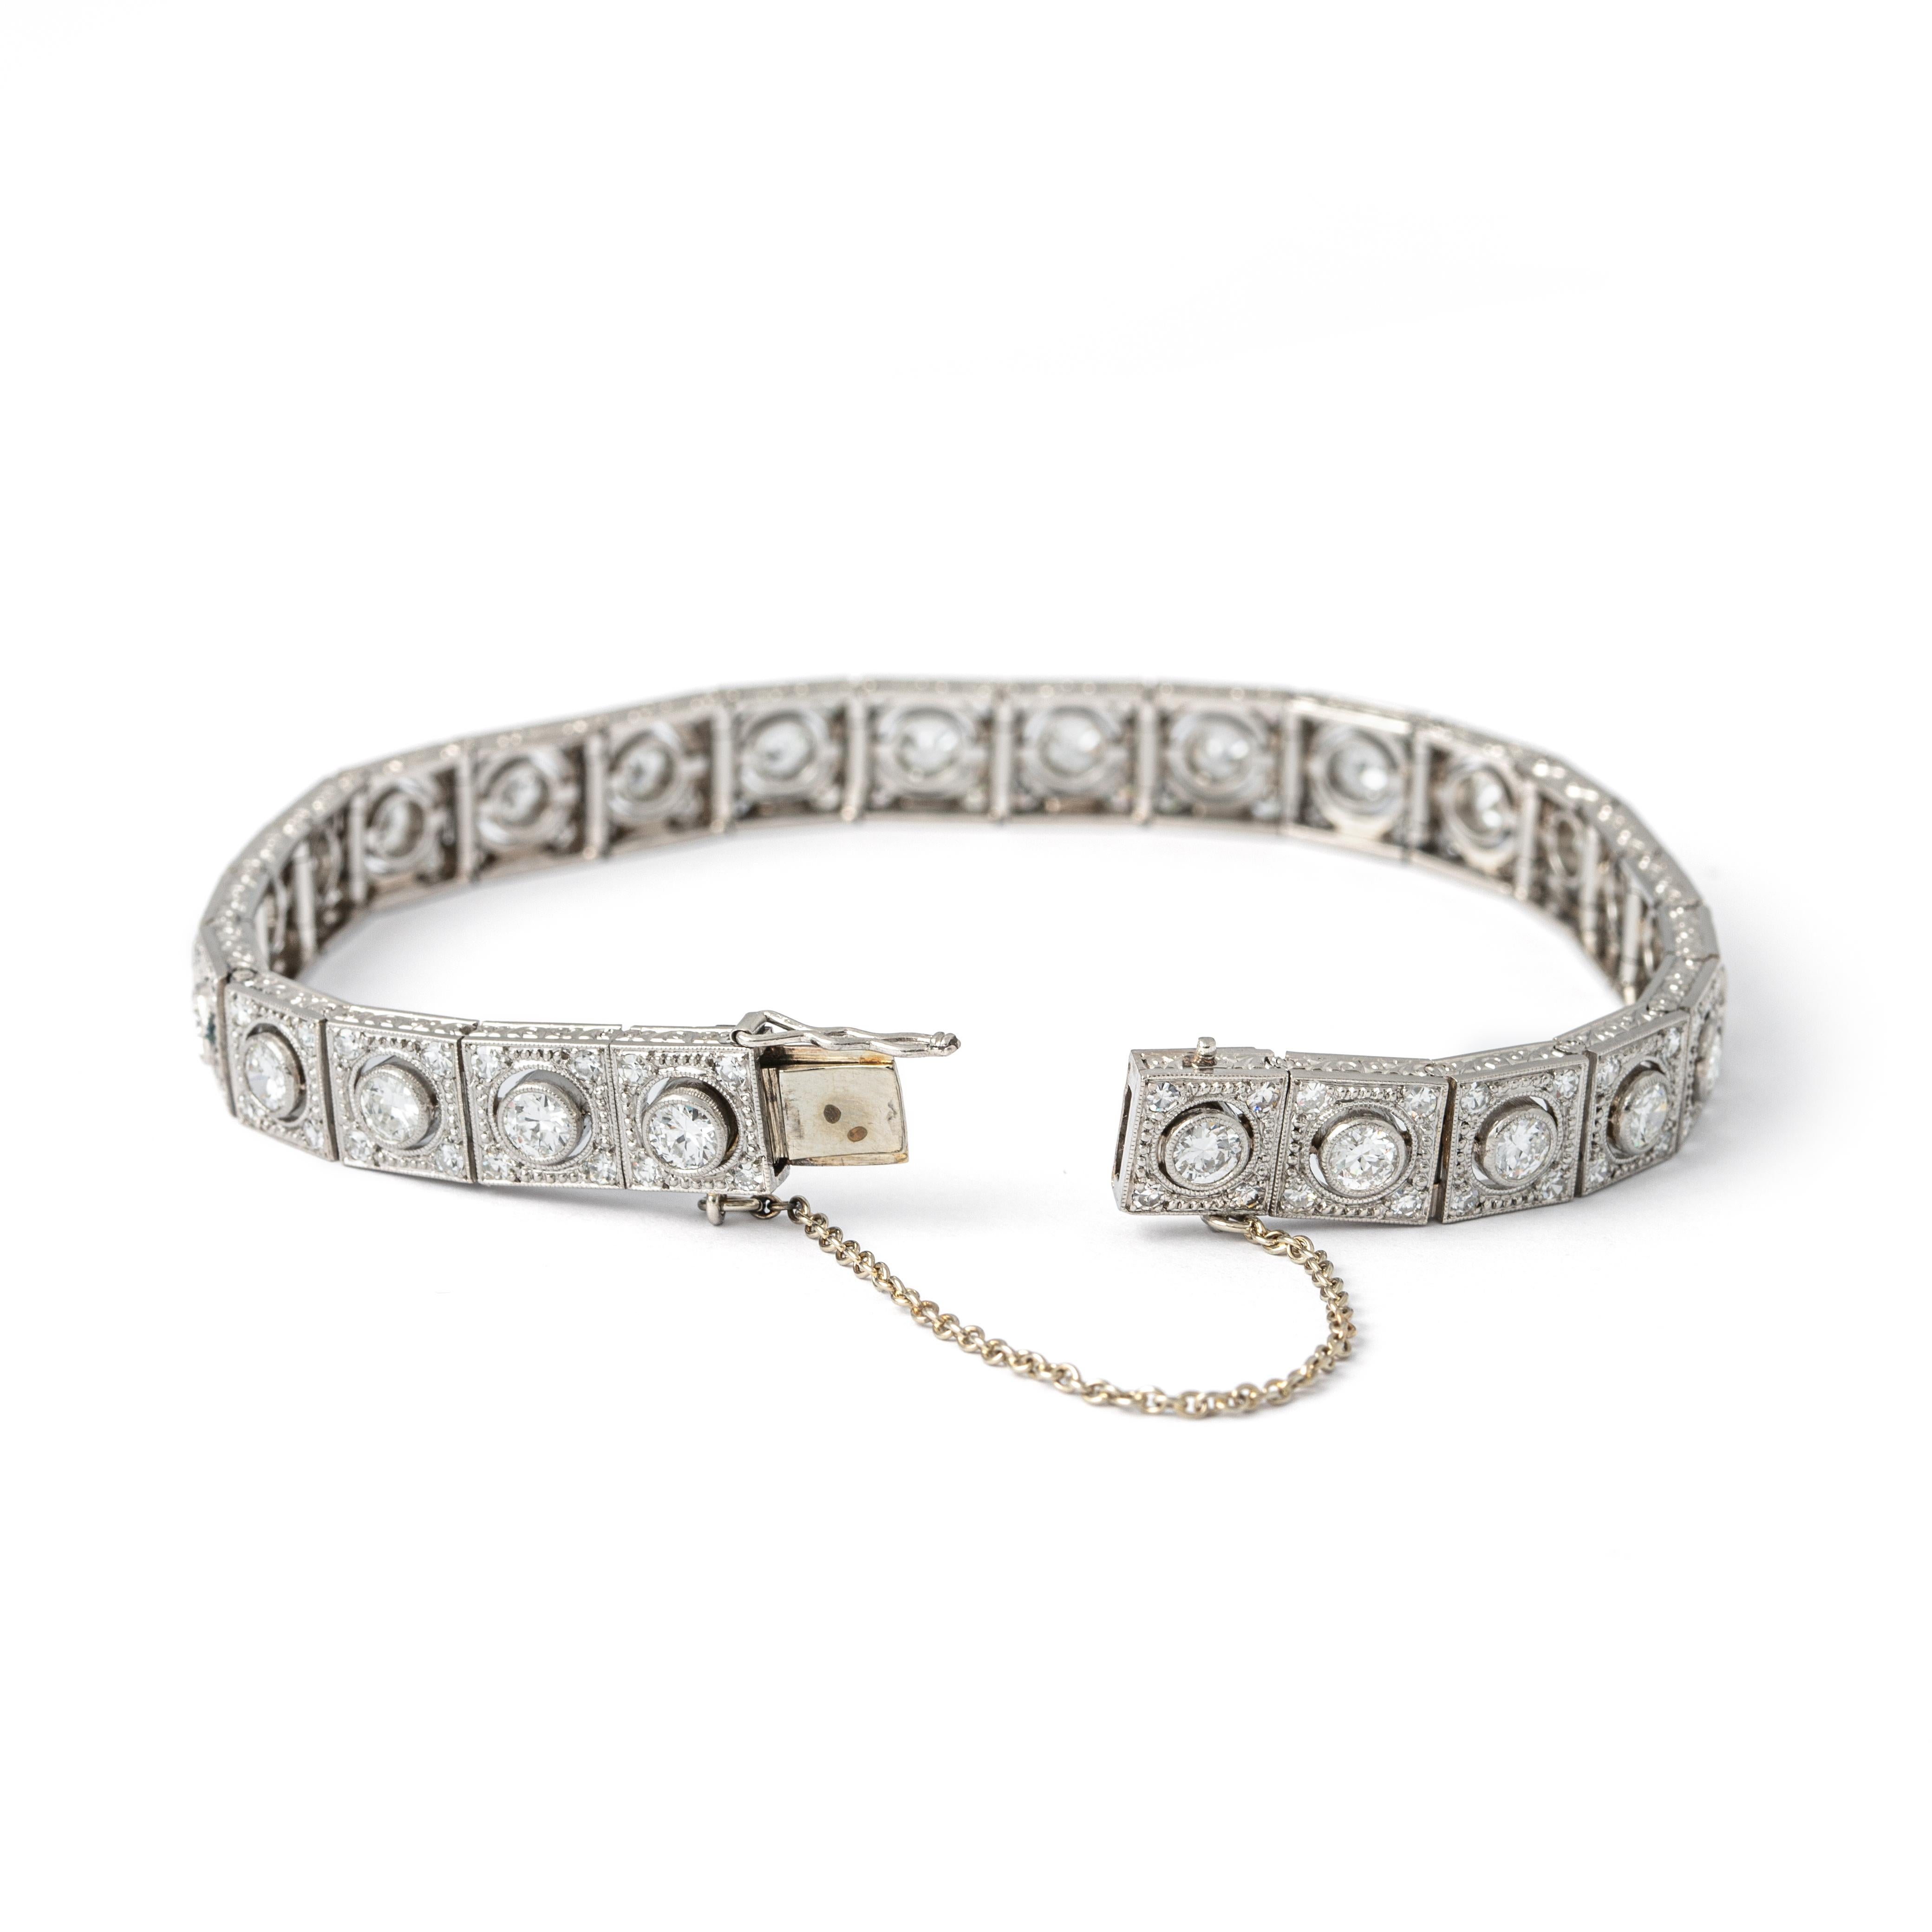 Art Deco Diamant-Platin-Armband.
Armband aus Platin, besetzt mit 26 Diamanten (ca. 0,15ct) und 104 Diamanten (ca. 2,8 cz). Insgesamt 6,8 Karat.

Gesamtgewicht: 29,69 Gramm

Gesamtlänge: ca. 18.00 Zentimeter.